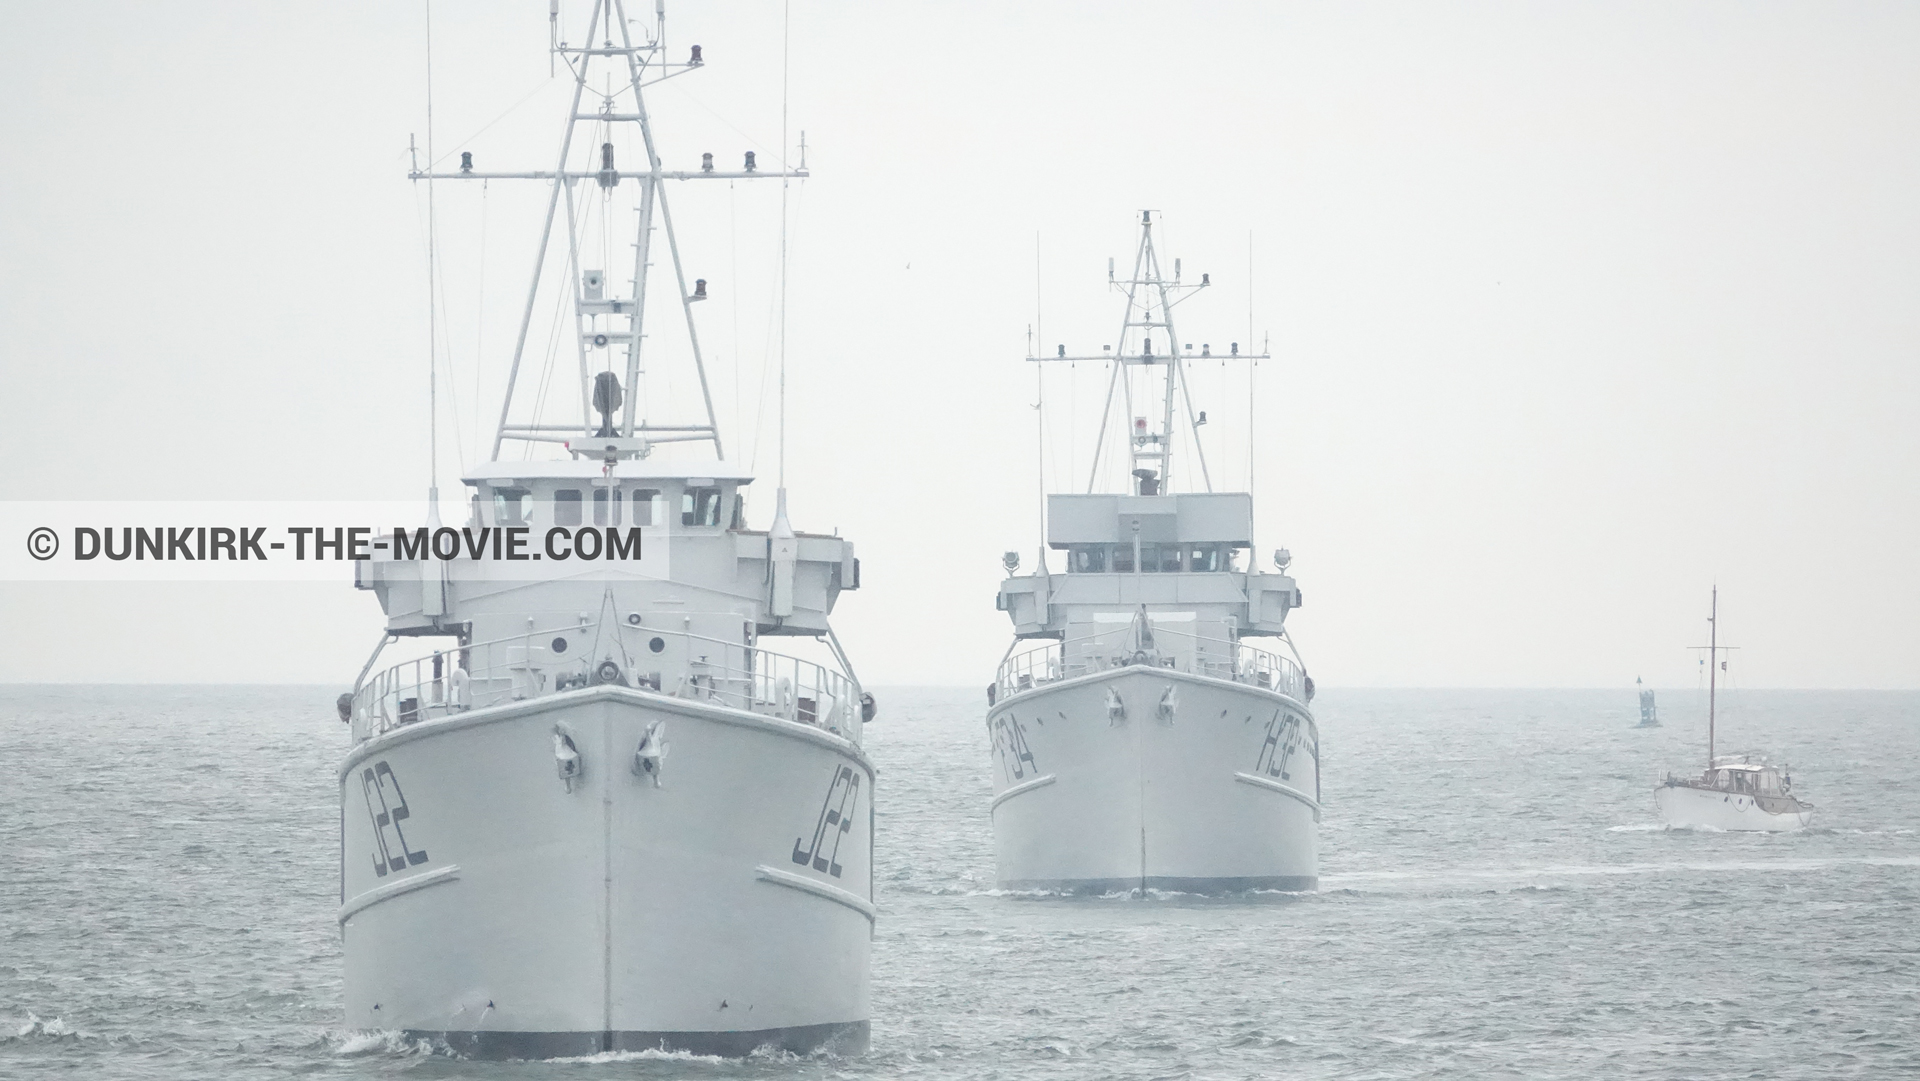 Fotos con barco, F34 - Hr.Ms. Sittard, H32 - Hr.Ms. Sittard, J22 -Hr.Ms. Naaldwijk, mares calma,  durante el rodaje de la película Dunkerque de Nolan